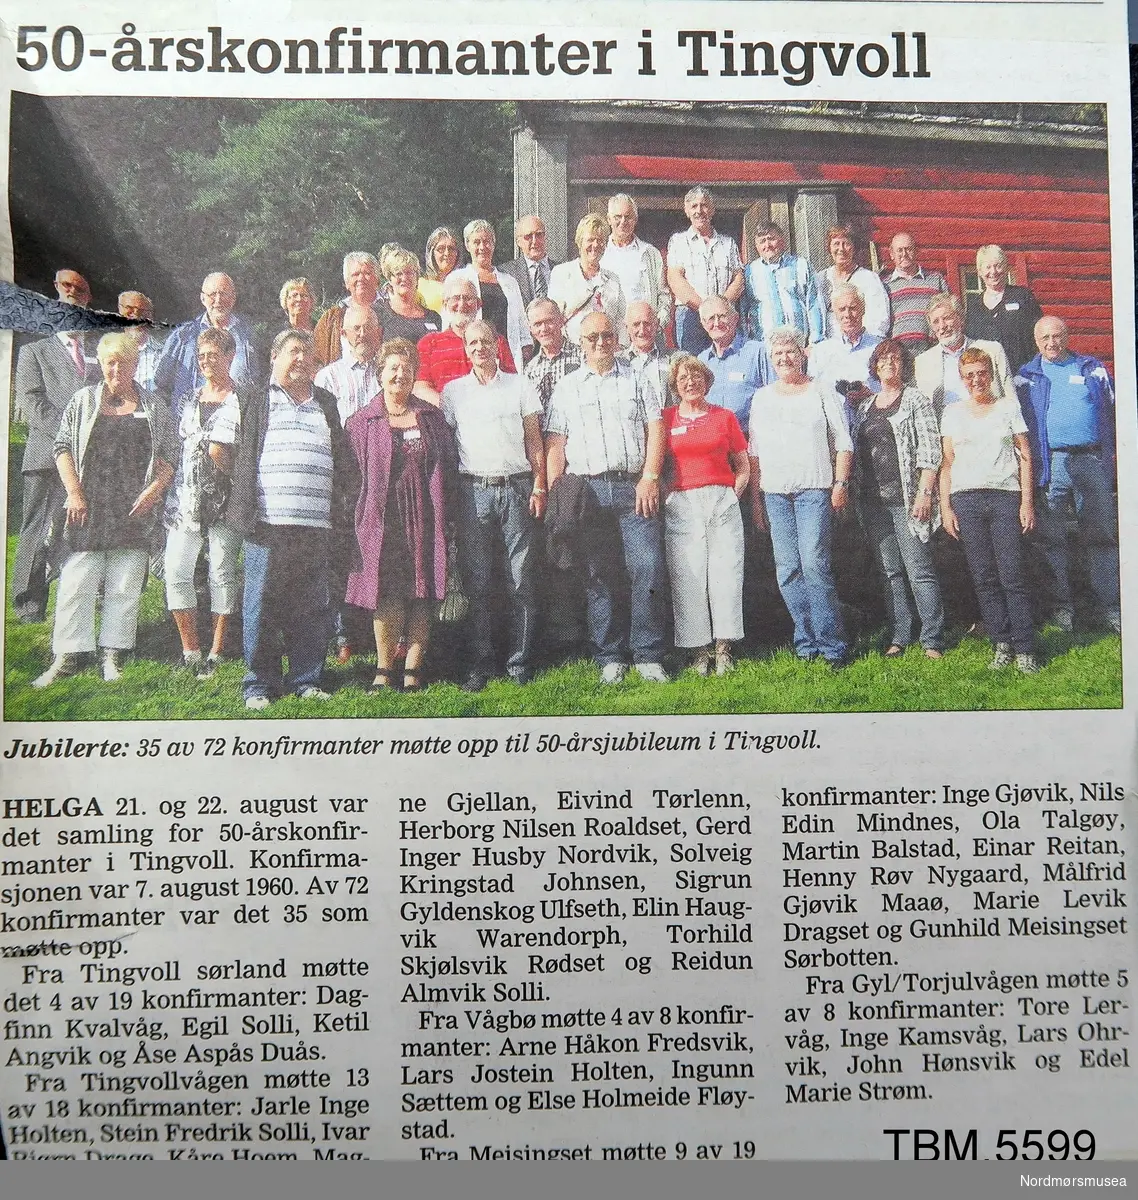 Bilde av 7. klasse Tingvollvågen skole 1960.
18 elevar somalle er namngitt på baksida av bildet.